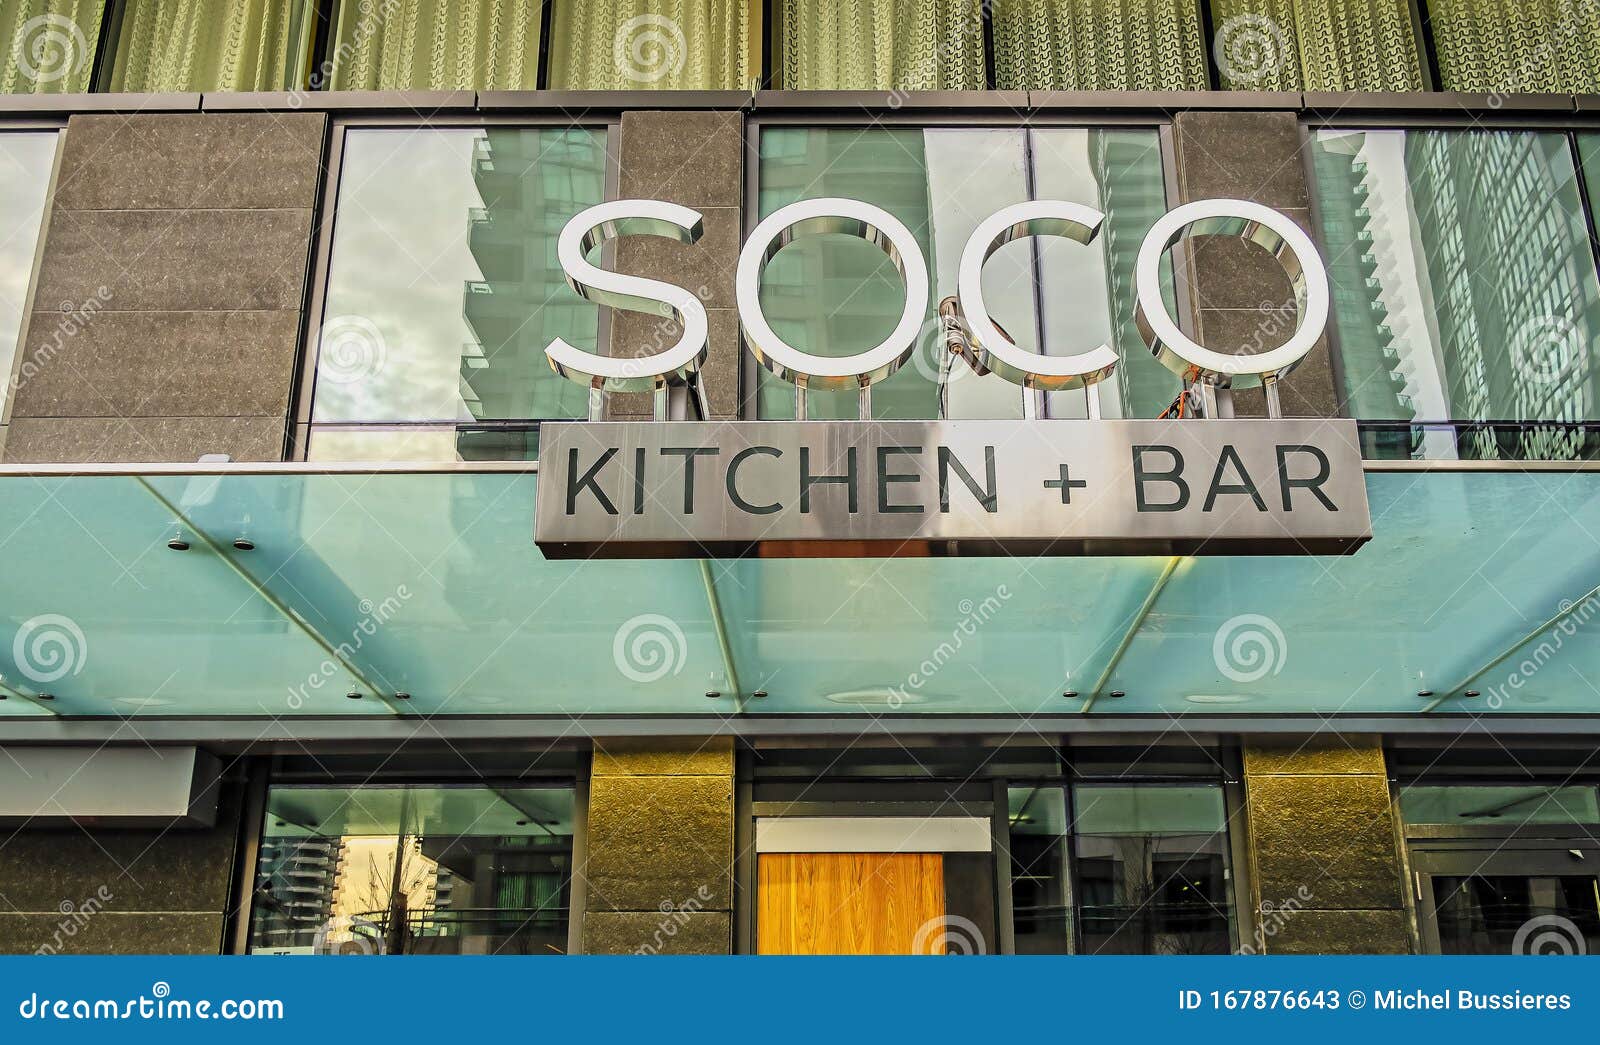 soco kitchen and bar photos